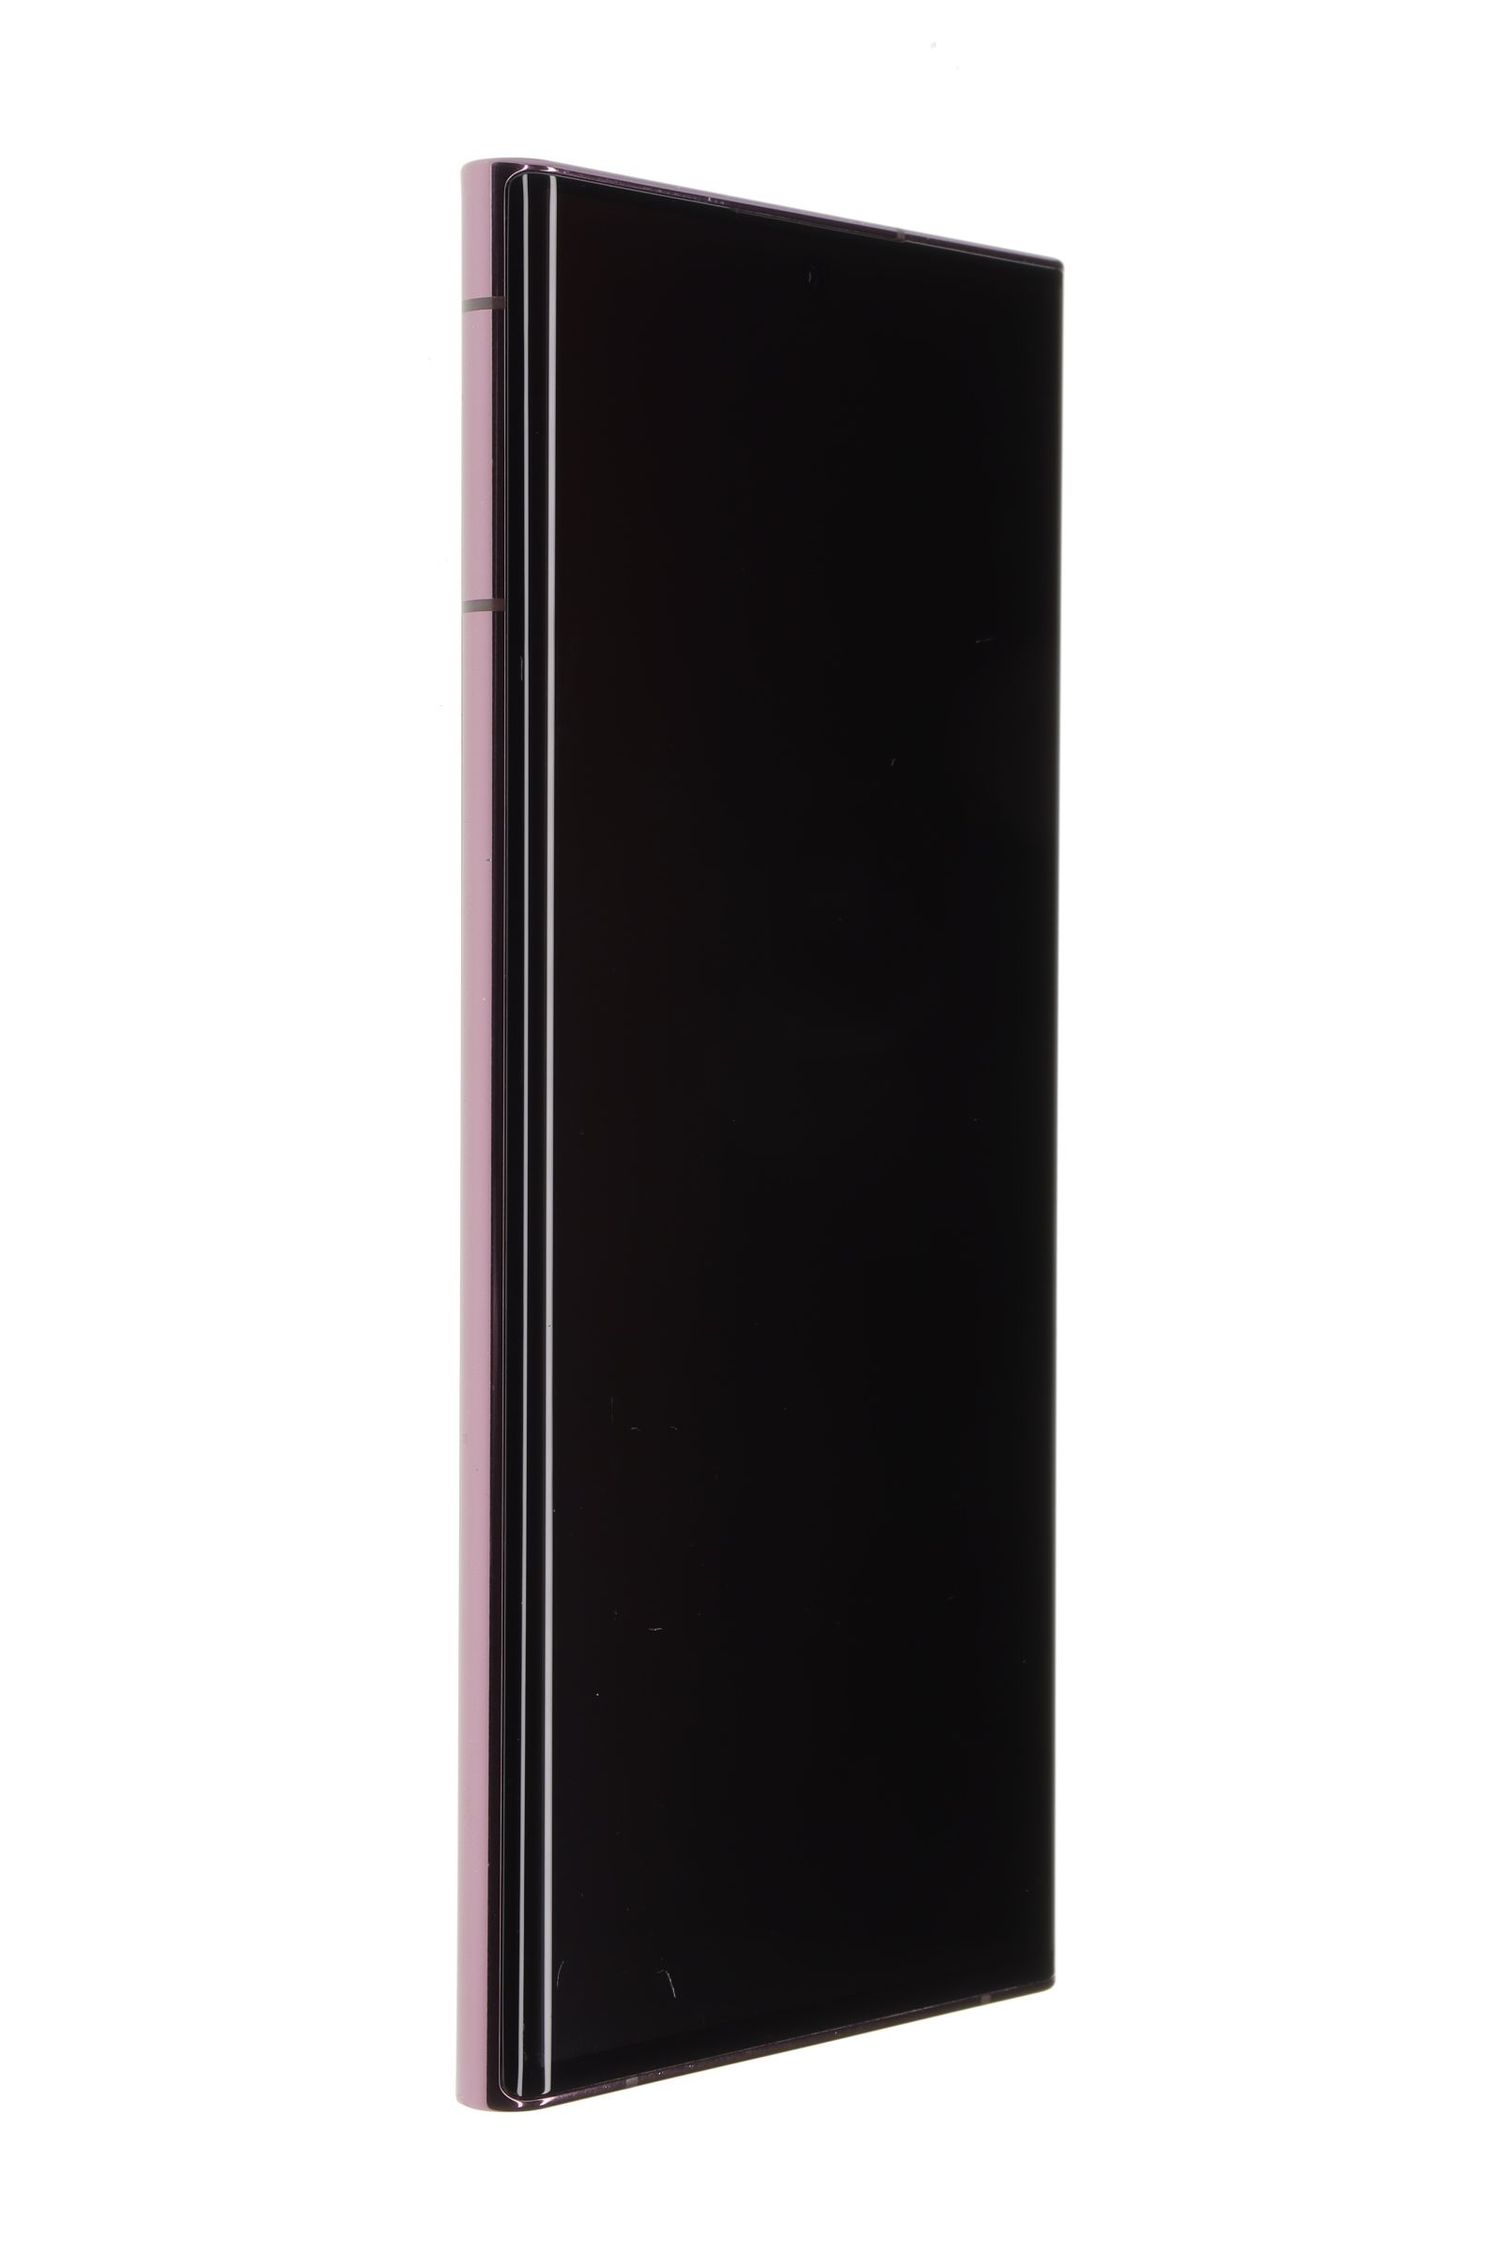 Mobiltelefon Samsung Galaxy S22 Ultra 5G Dual Sim, Burgundy, 256 GB, Foarte Bun